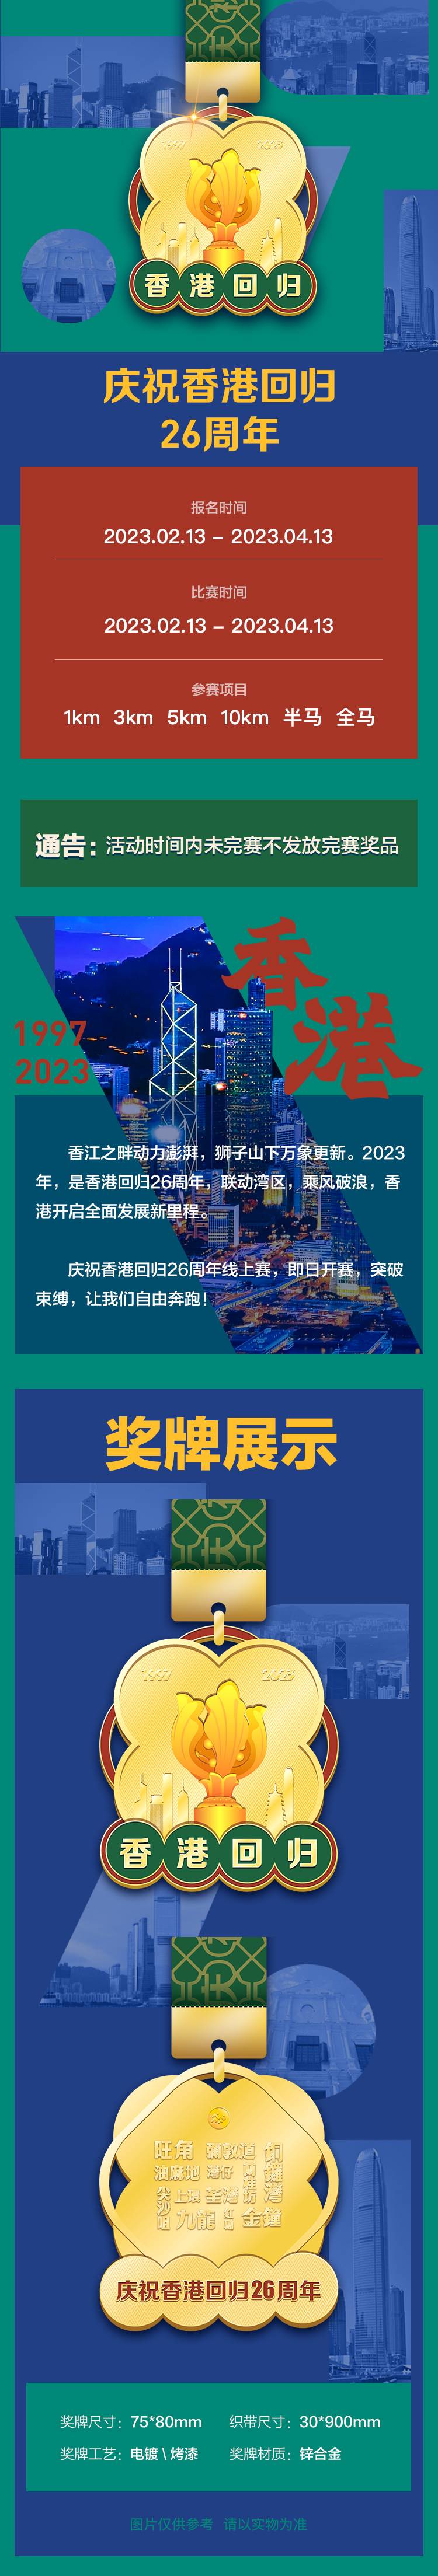 2023香港详情页_01.jpg